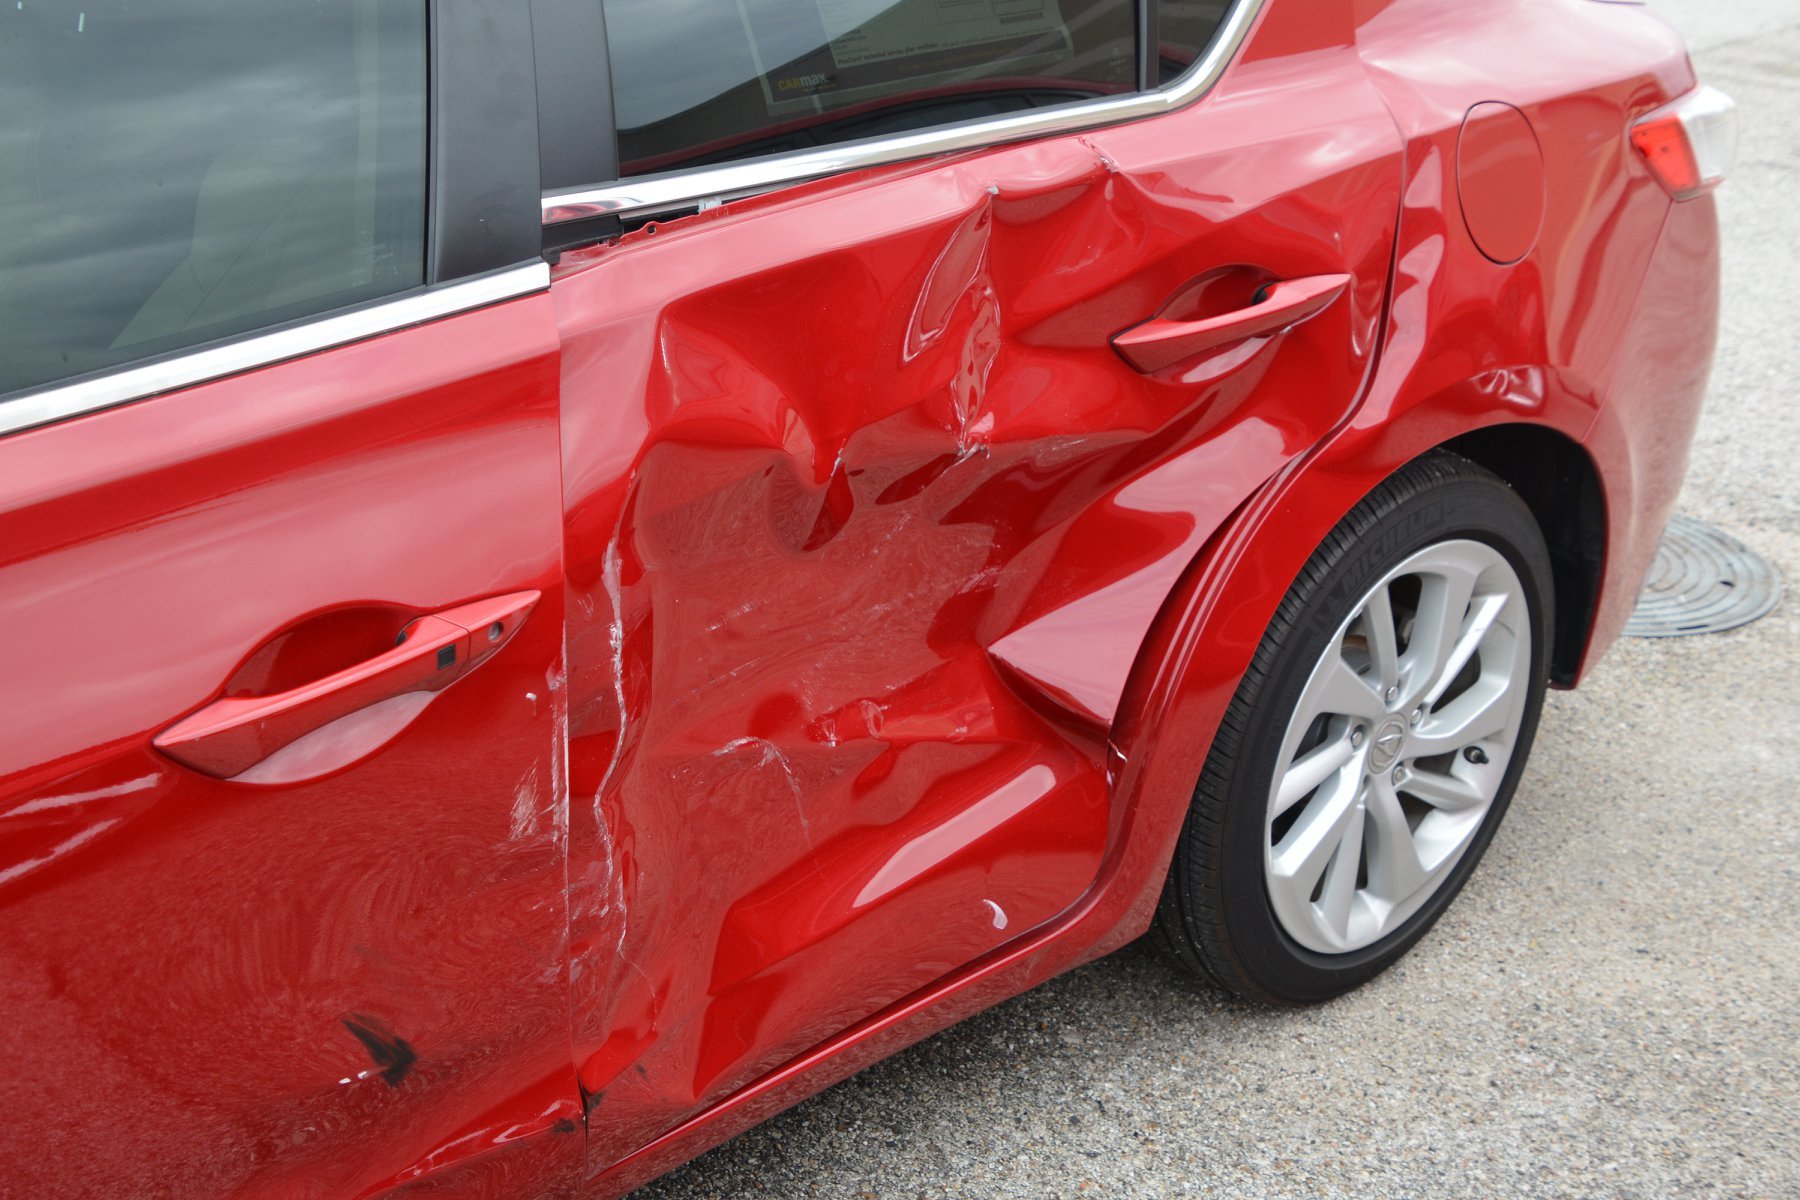 Čtveřice mladíků způsobila během svého řádění na parkovišti dealerství škody ve výši cca 17.9 milionu korun (Facebook/ @Precinct4)